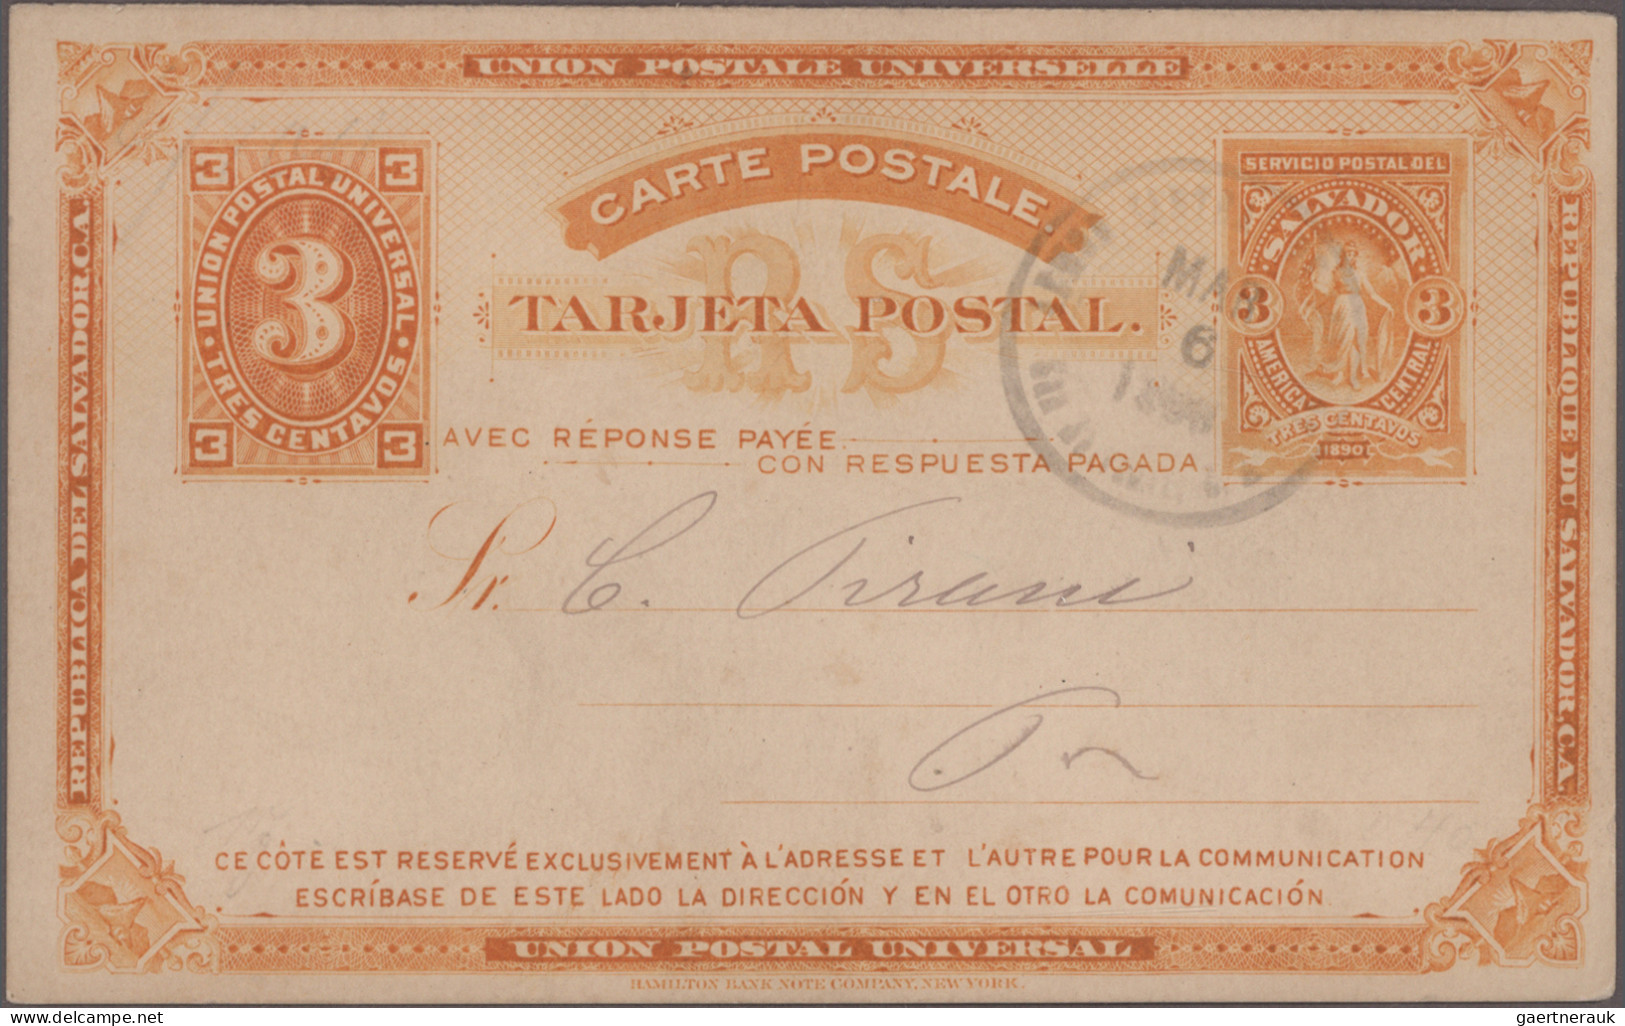 El Salvador - Postal Stationery: 1890/1897, Collection Of 40 Commercially Used S - El Salvador